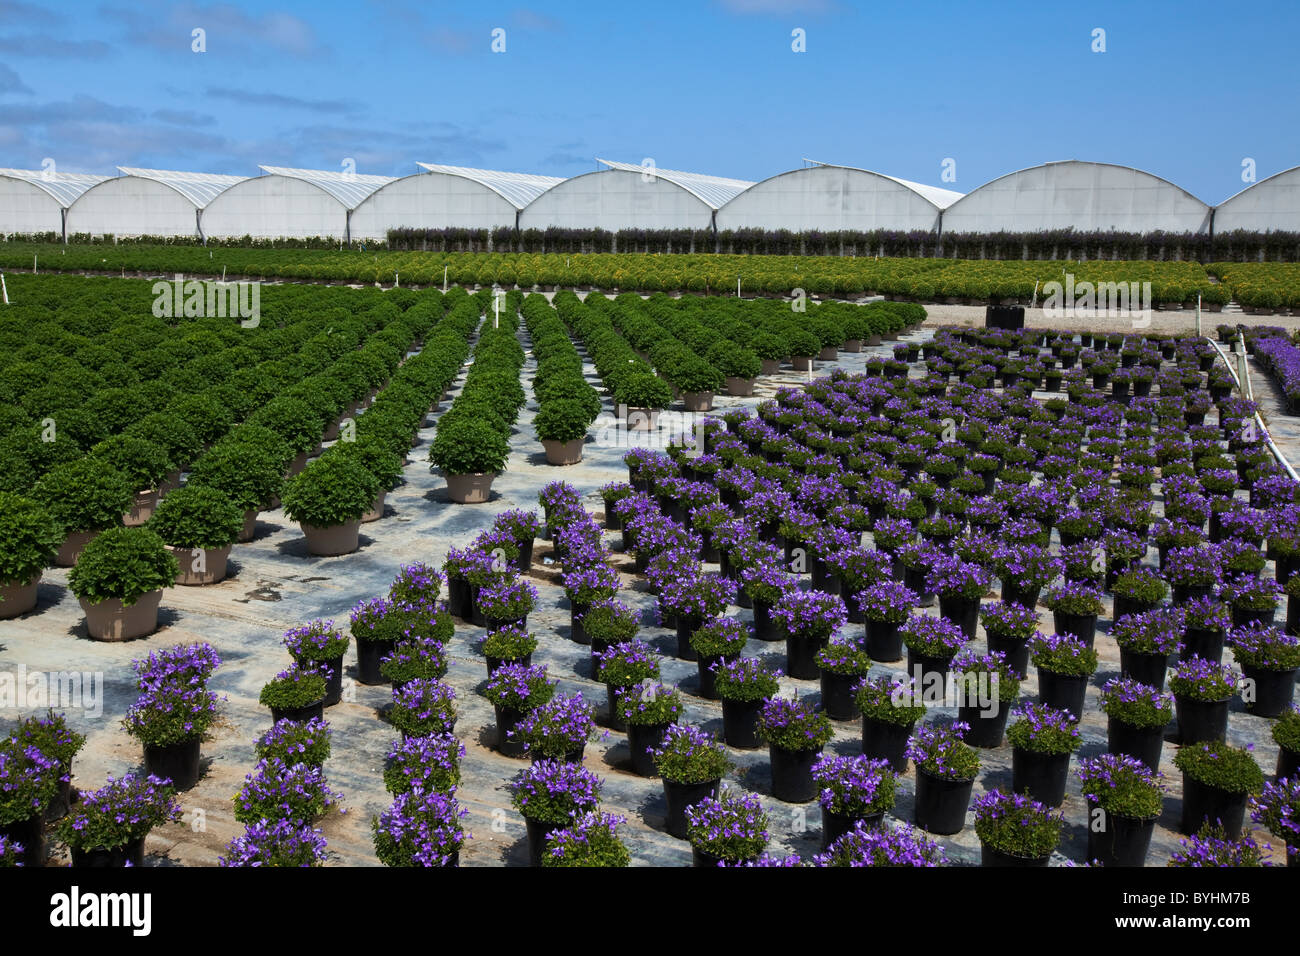 Topfpflanzen, Zierpflanzen, Beetpflanzen und Sträucher an einem Gartenbau Baumschule und Gewächshaus / Salinas, Kalifornien, USA. Stockfoto